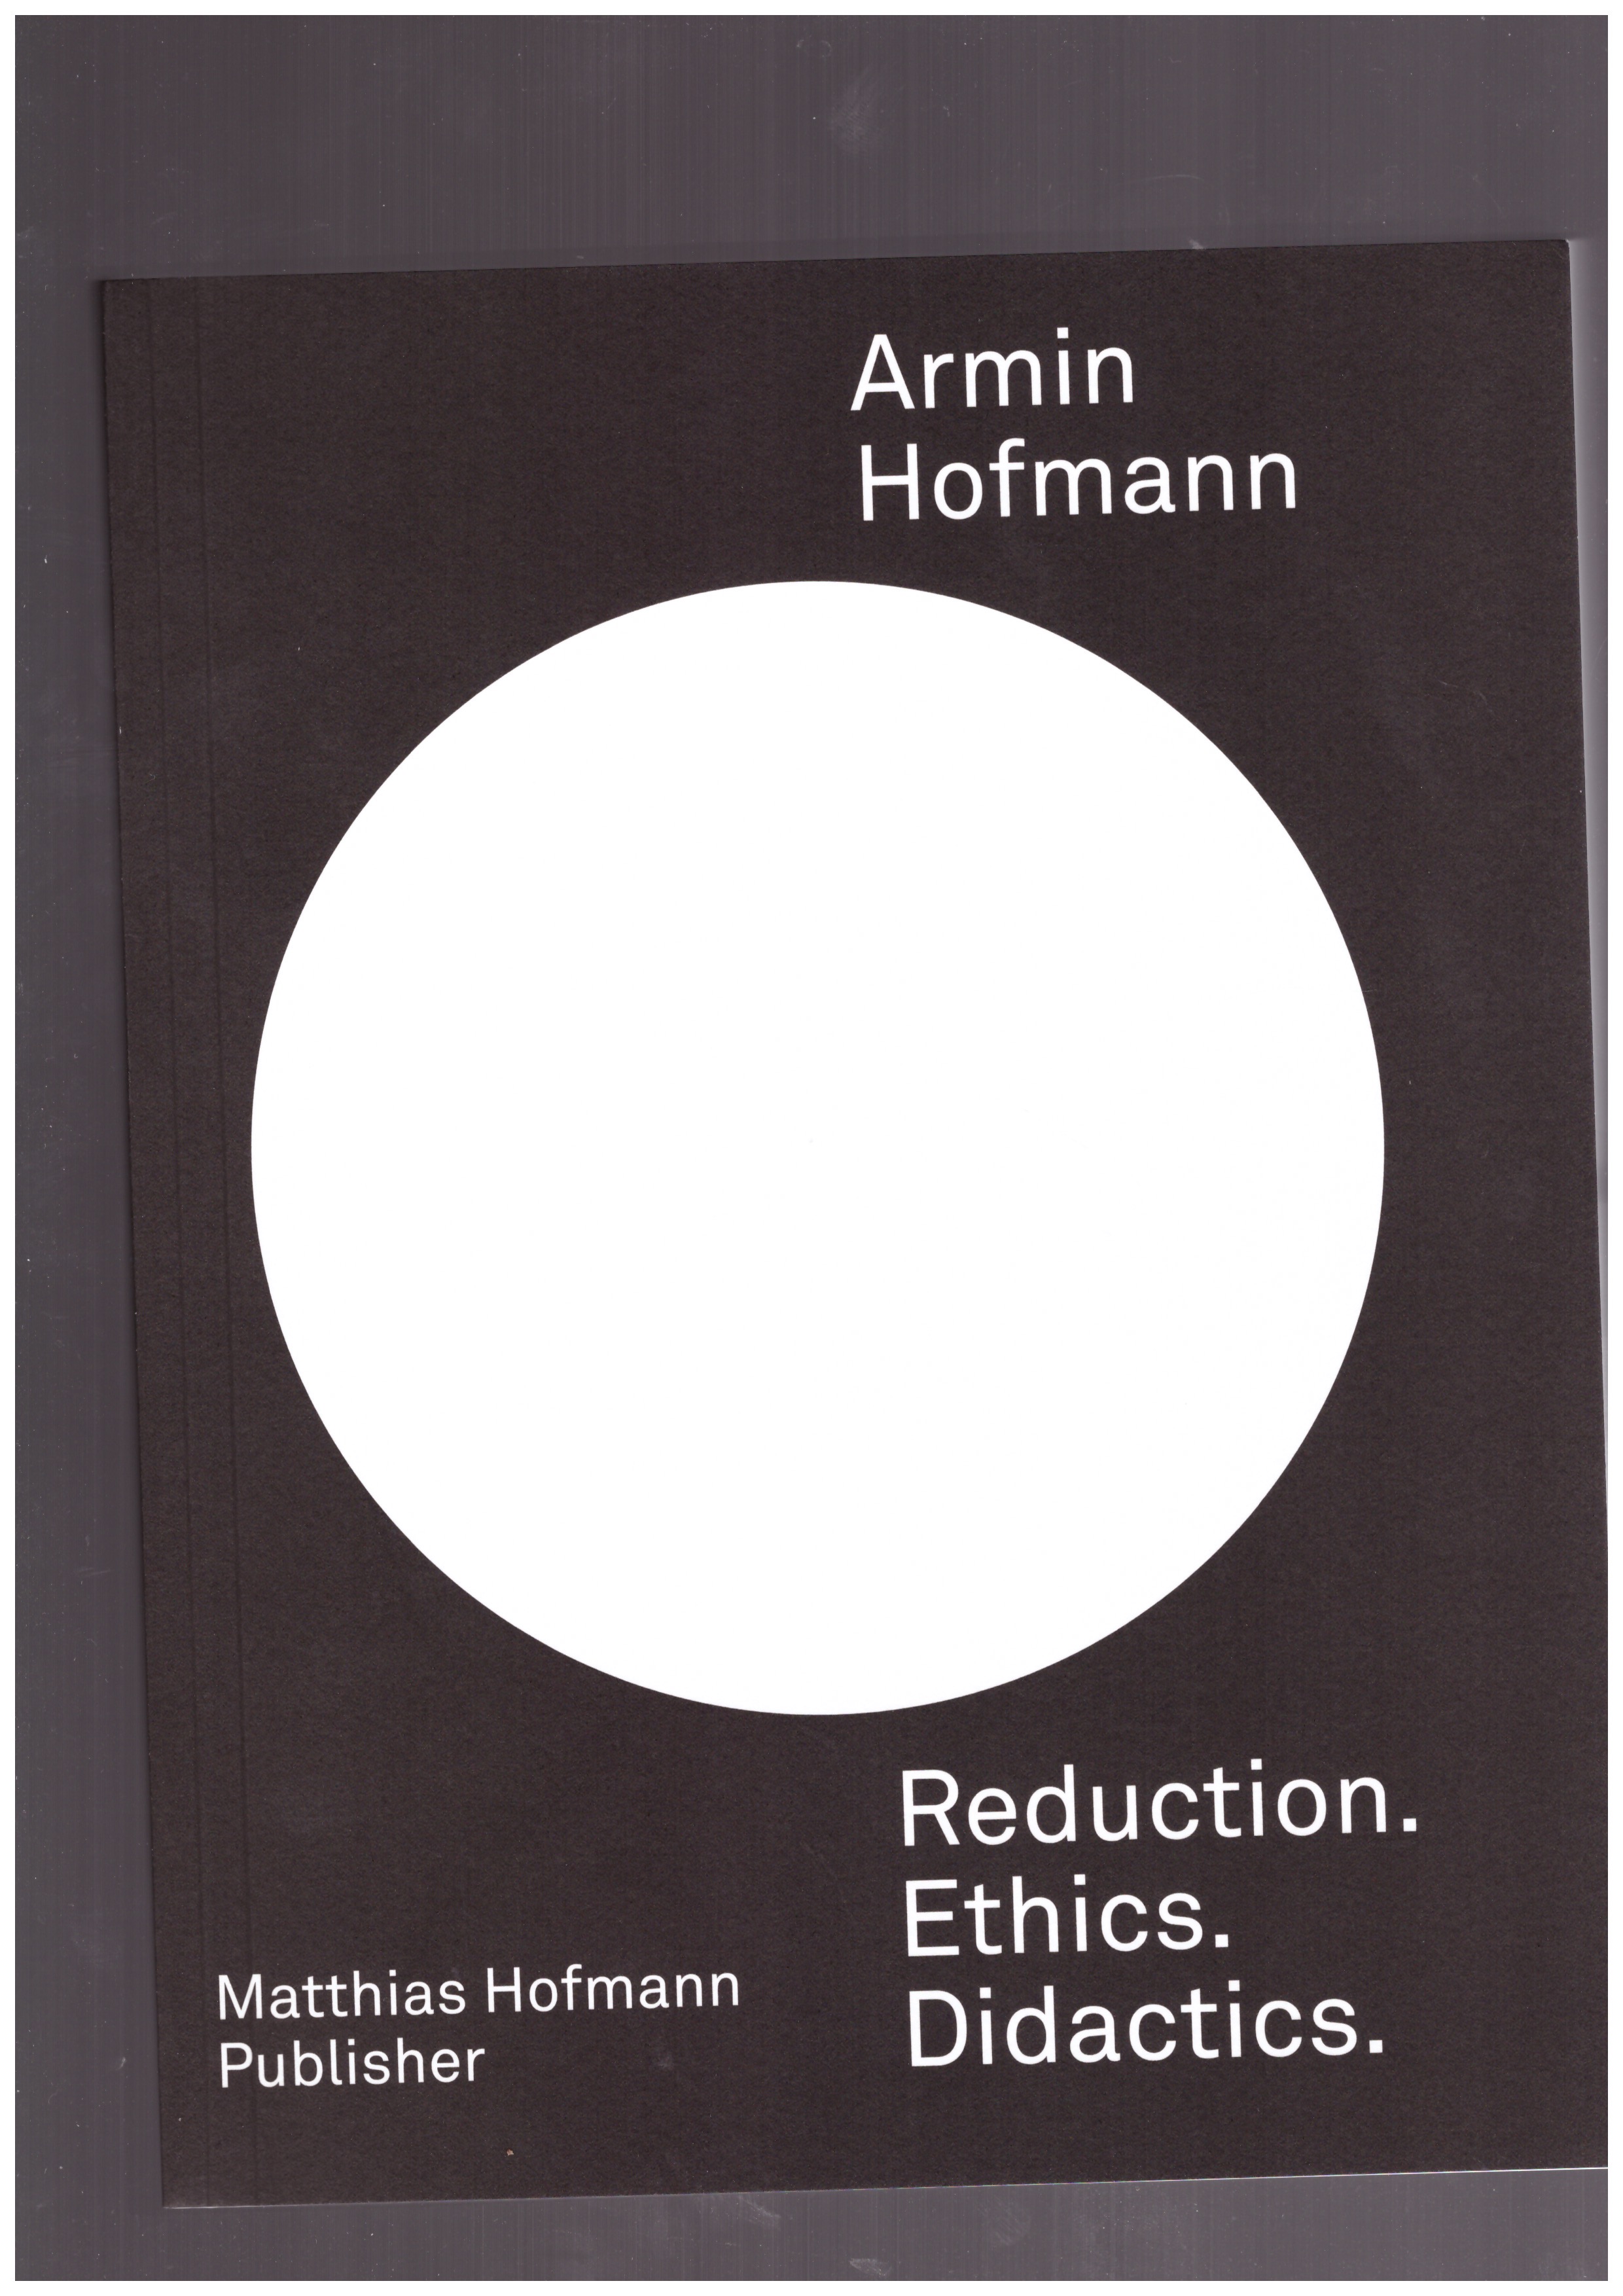 HOFMANN, Armin - Reduction. Ethics. Didactics.